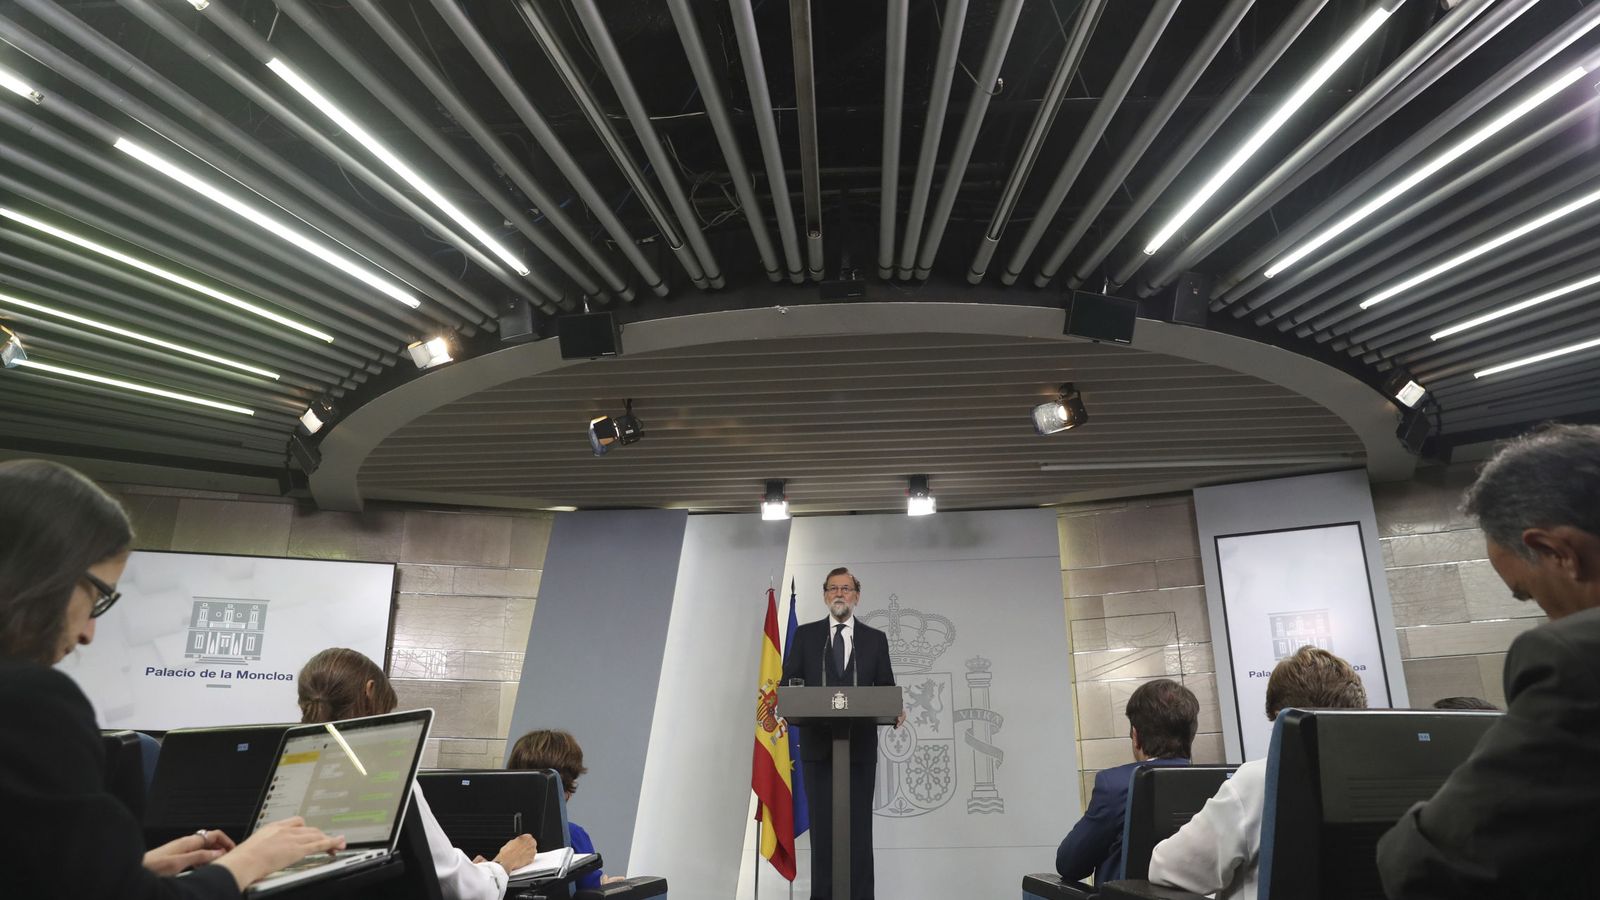 Foto: El presidente del Gobierno, Mariano Rajoy, durante su comparecencia en el Palacio de la Moncloa. (EFE)